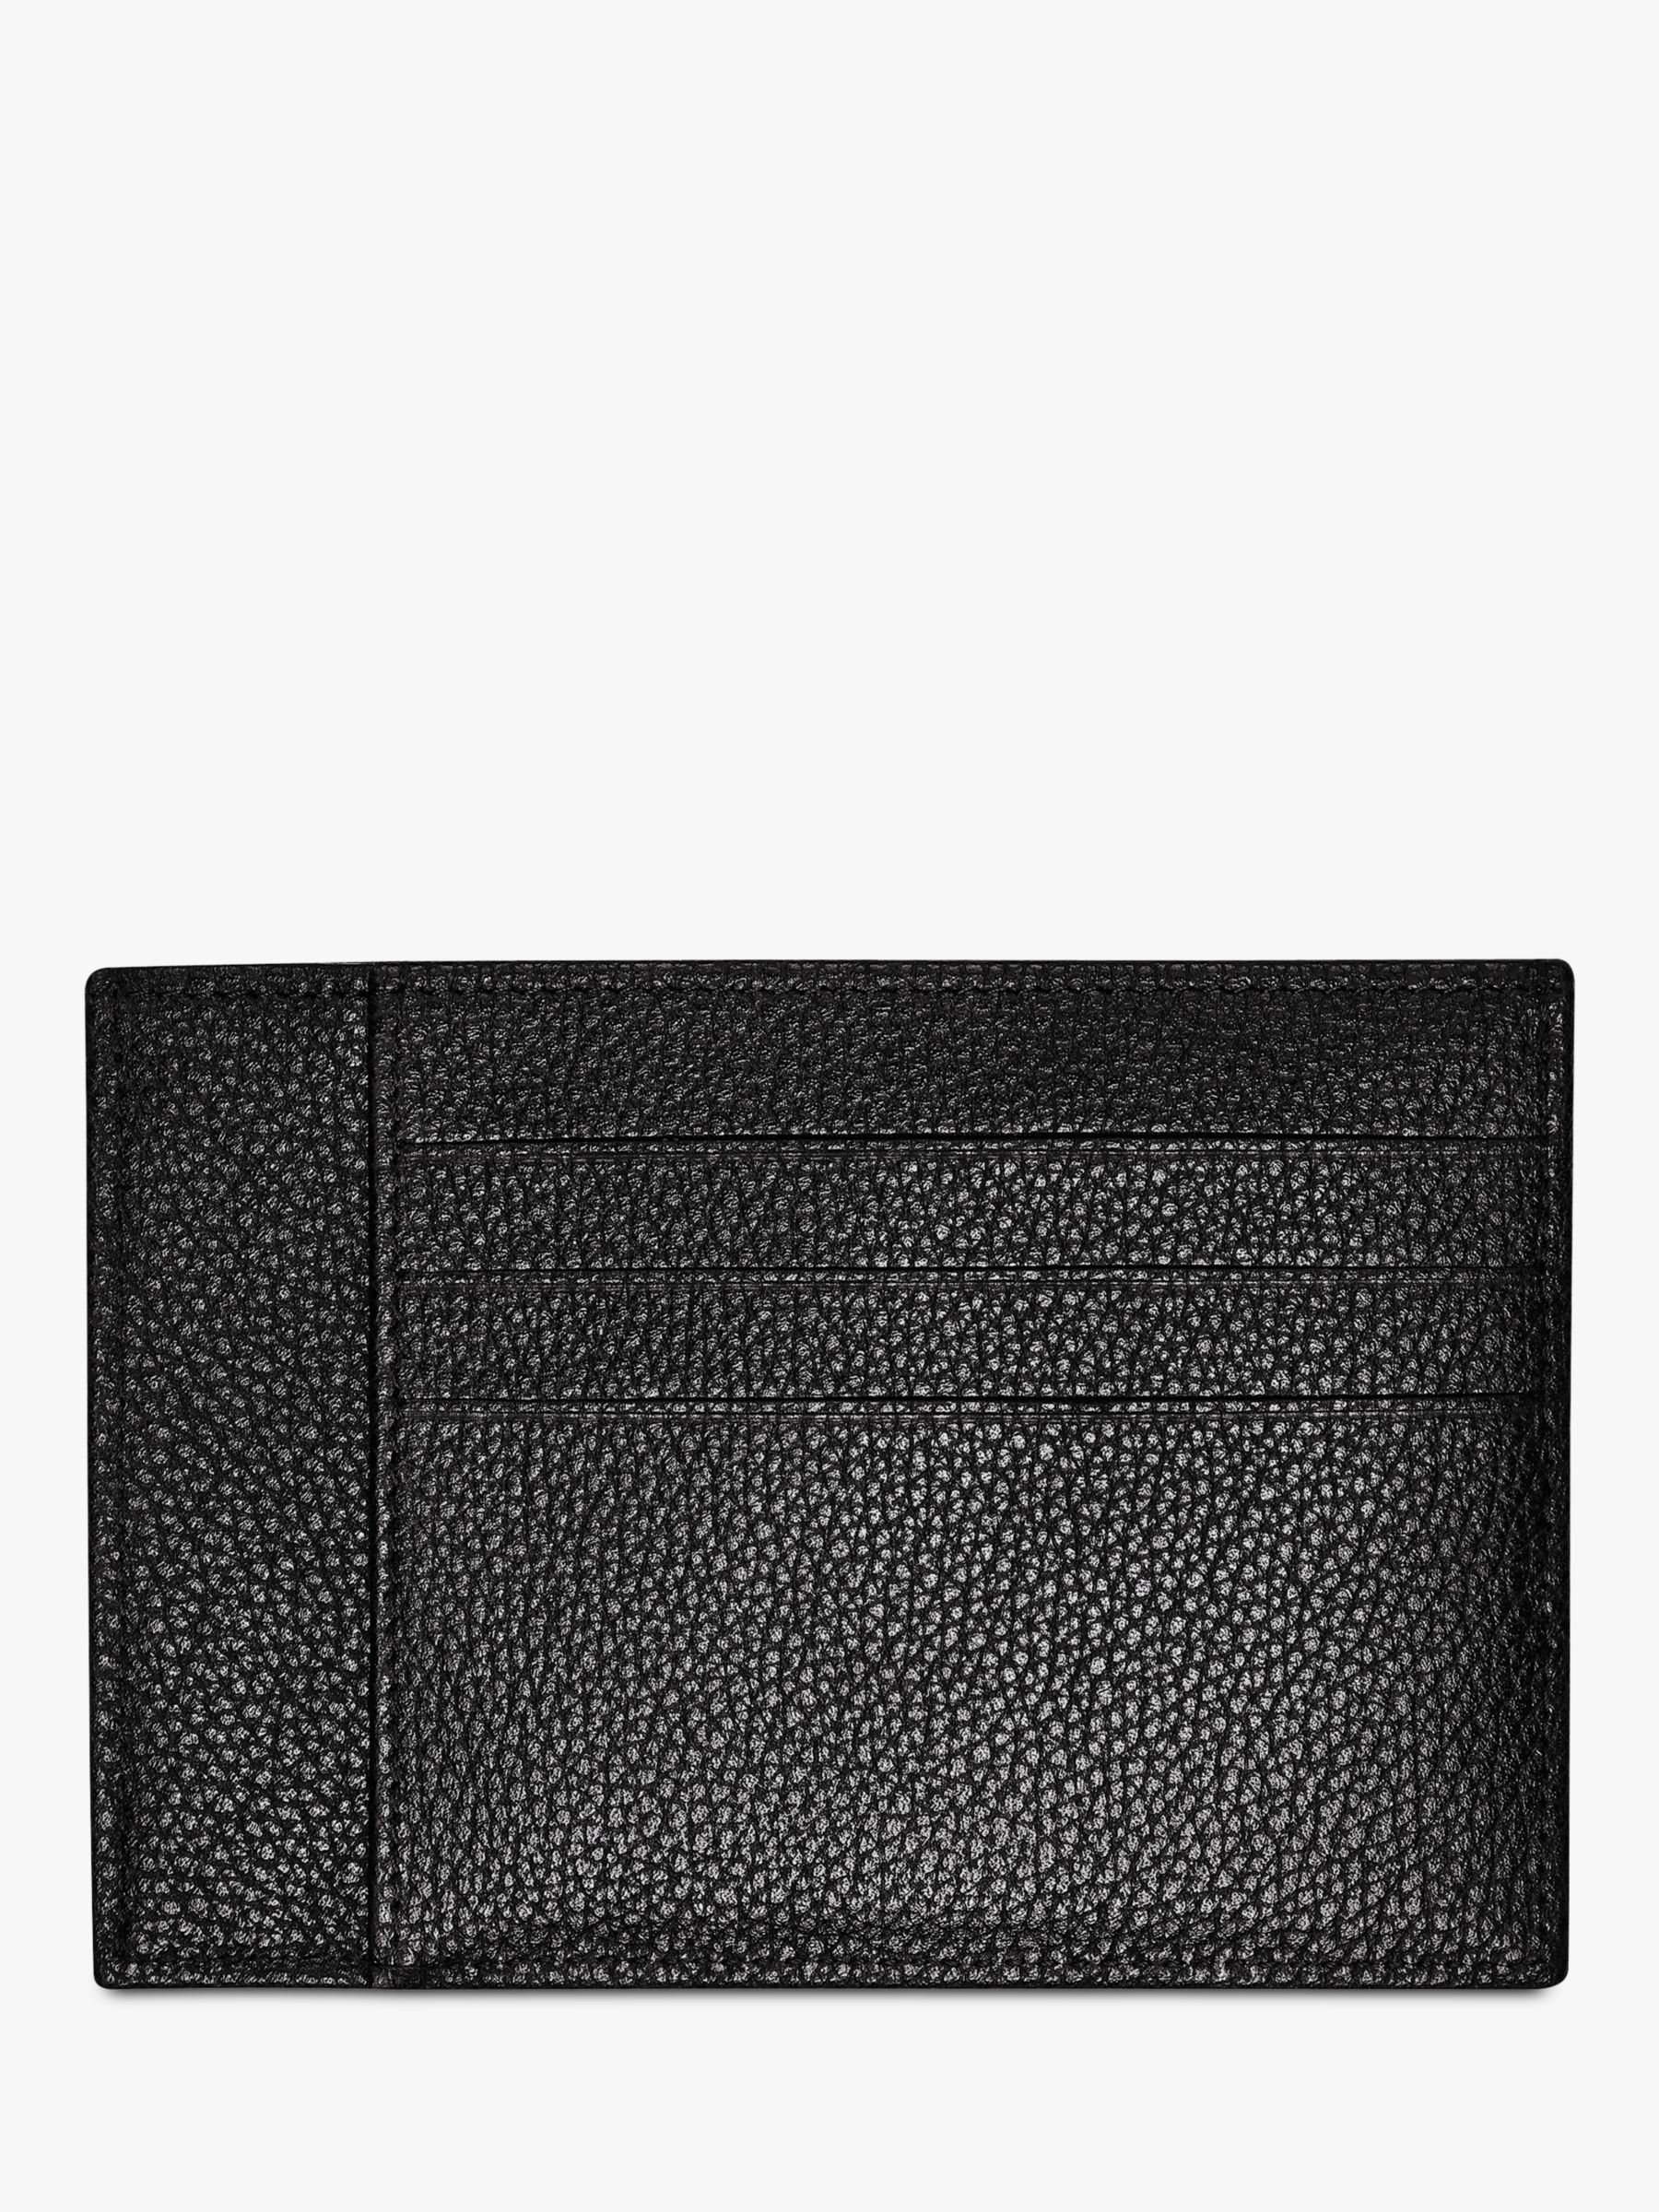 Longchamp Le Foulonné Leather Card Holder, Black